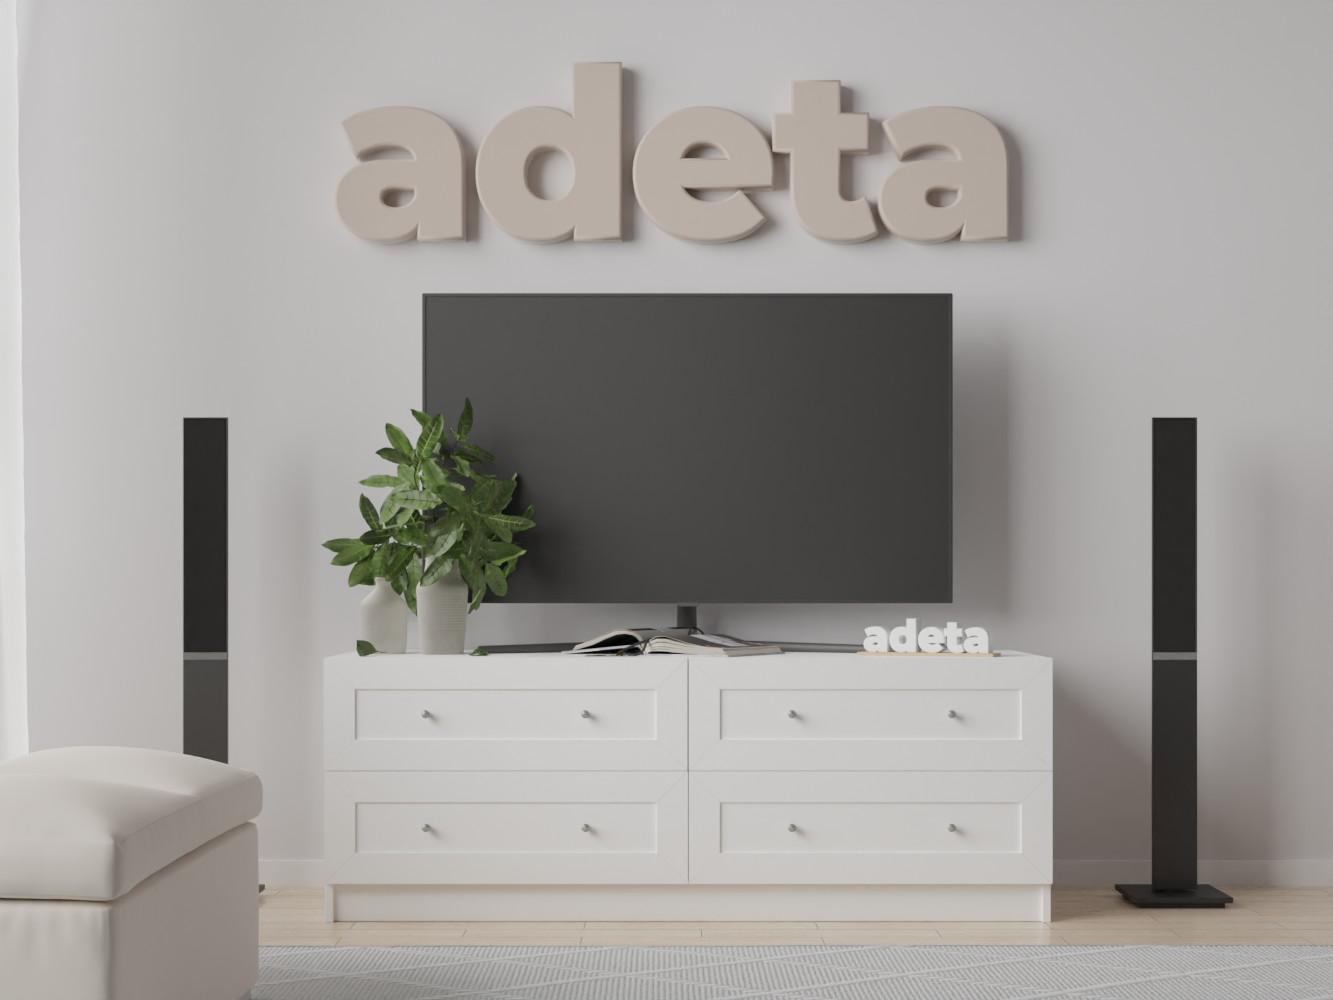 Изображение товара Тумба под телевизор Билли 518 white ИКЕА (IKEA), 120x50x50 см на сайте adeta.ru